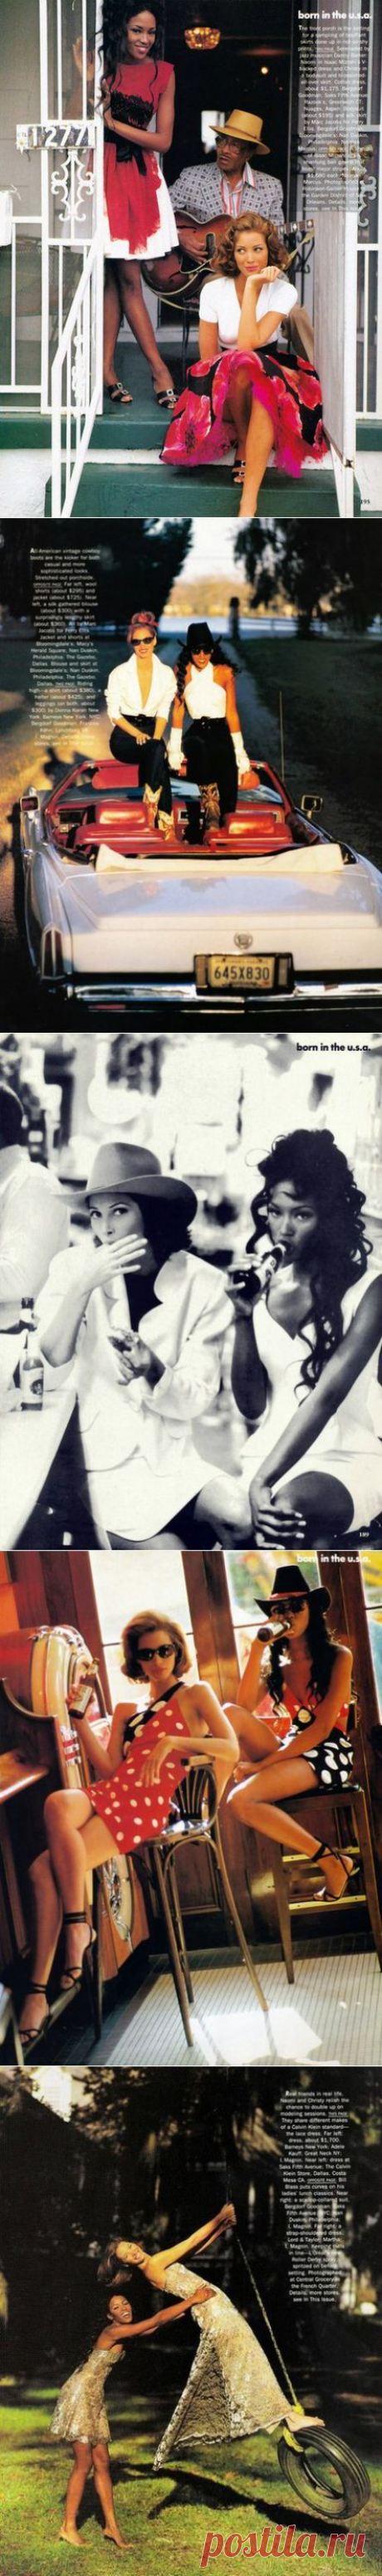 Born in the USA Christy Turlington &amp; Naomi Campbell by Arthur Elgort for Vogue US, February 1992 

❤ ❤ ❤ ❤ ❤ ❤ ❤ ❤ ❤ ❤ ❤ ❤ ❤ ❤ ❤
Почему все мужчины испытывают влечение к кожно-зрительным женщинам? Чем они отличаются? Что это за женщины? Статья про публичных, манящих, АНТИ-женщин: